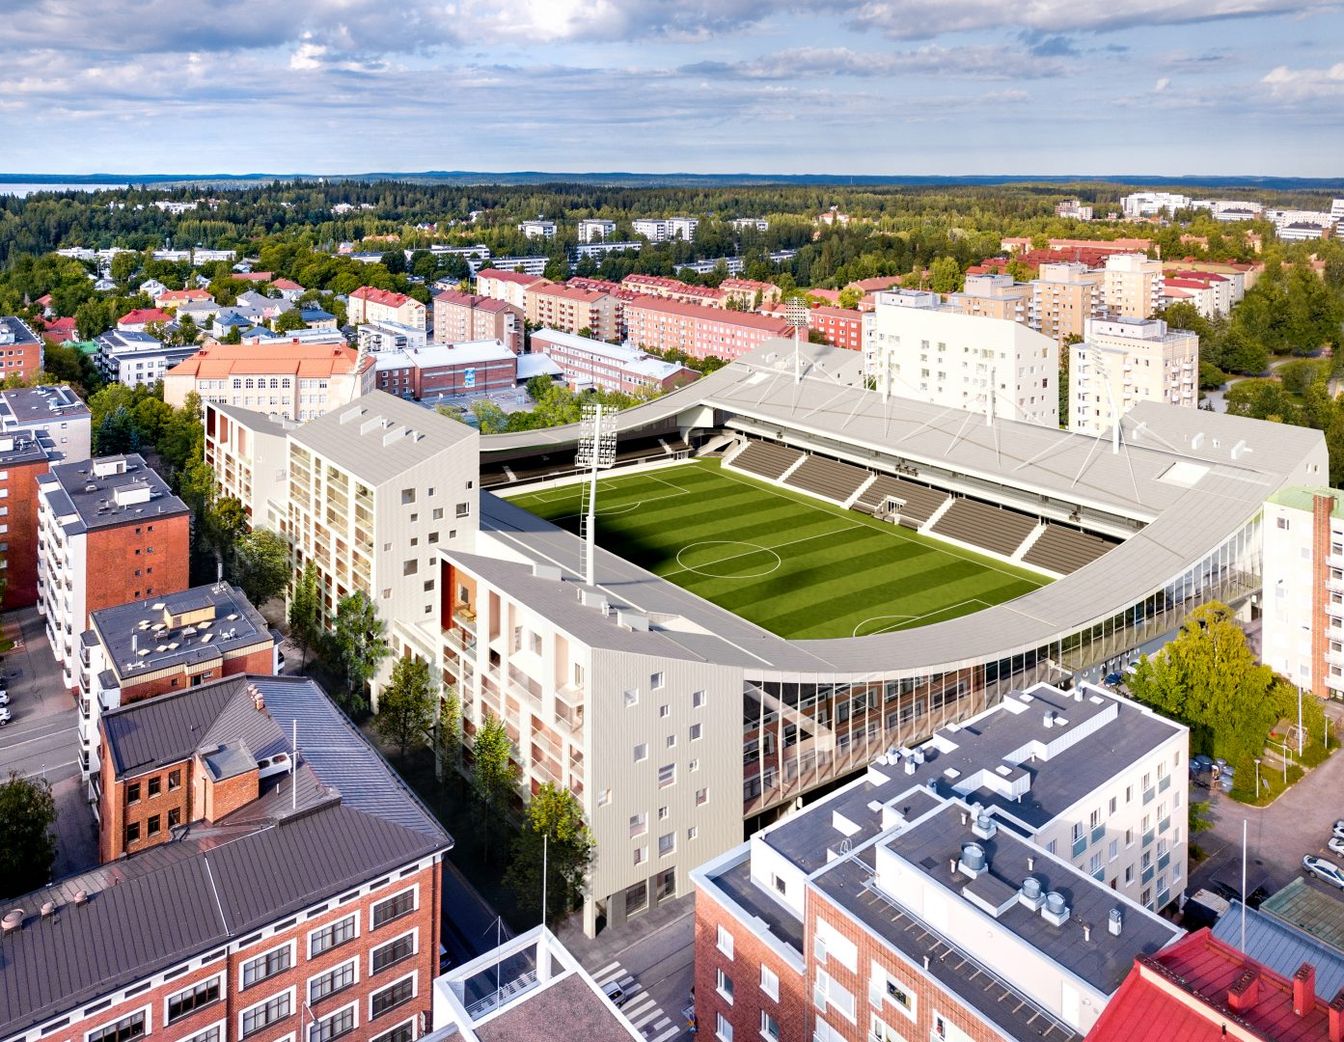 Tammelan Stadion, Tampere, Finland